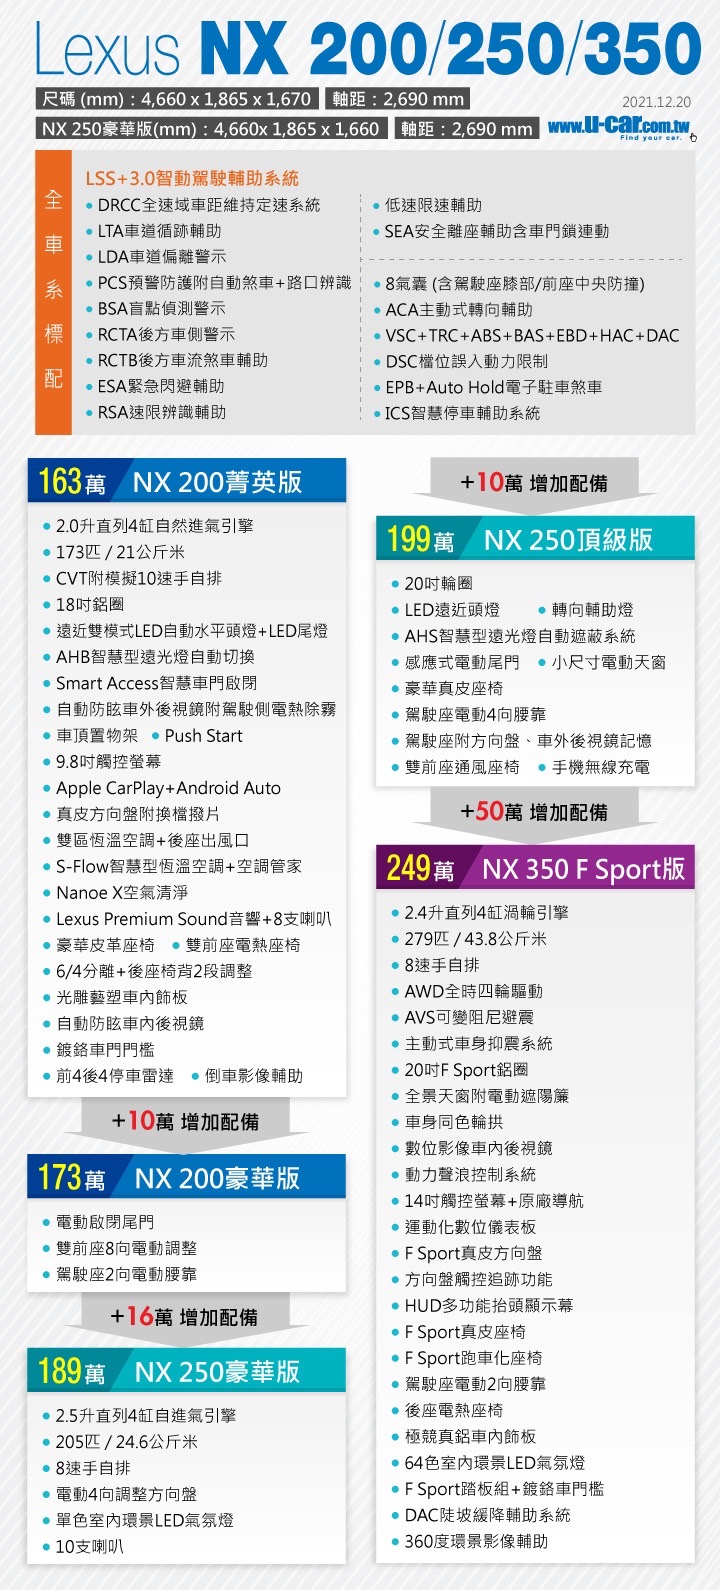 LEXUS,LEXUS NX200,NX200,NX200價格,NX200改車,NX200菜單,NX200規格,NX200開箱,NX250,NX350h,NX450h,新NX200